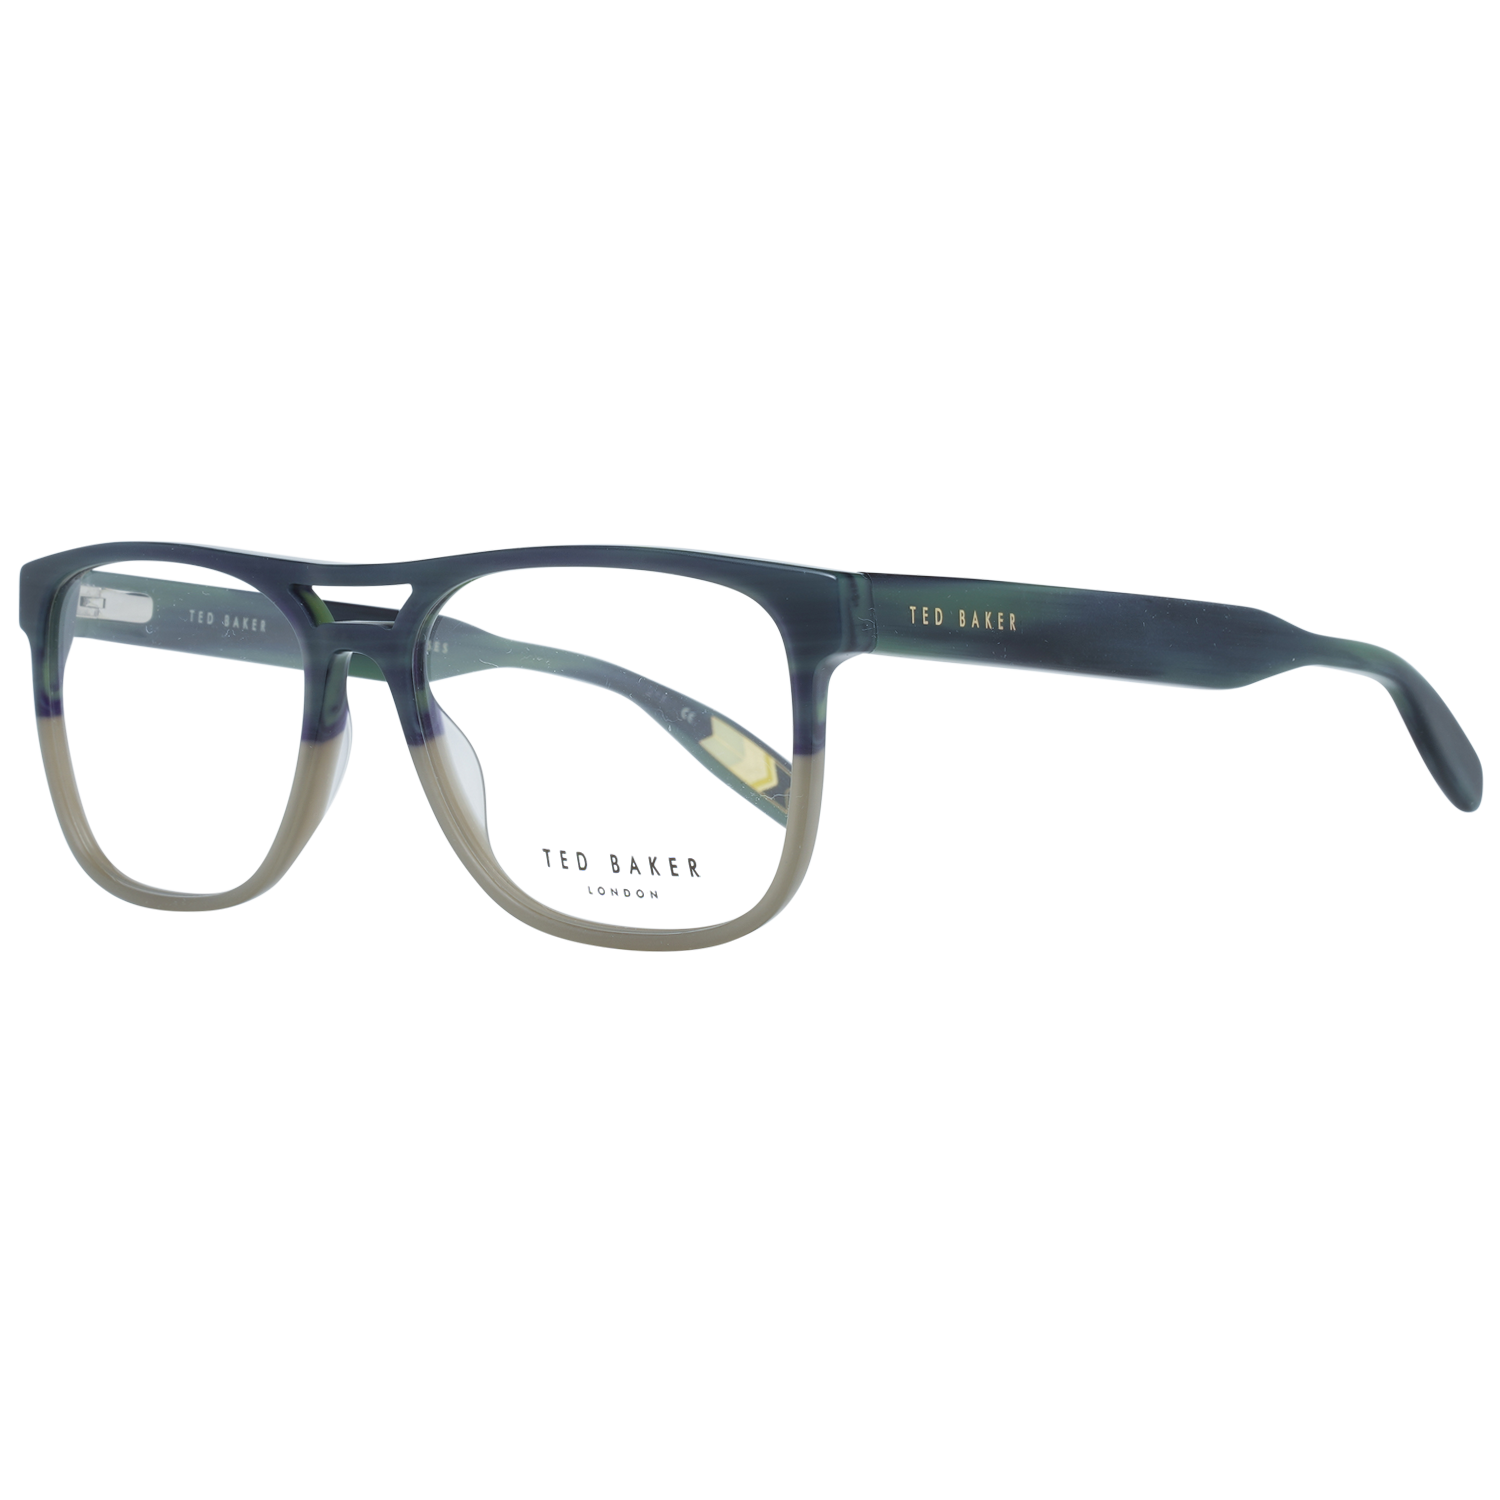 Ted Baker Frames Ted Baker Optical Frame TB8207 561 56 Holden Eyeglasses Eyewear UK USA Australia 